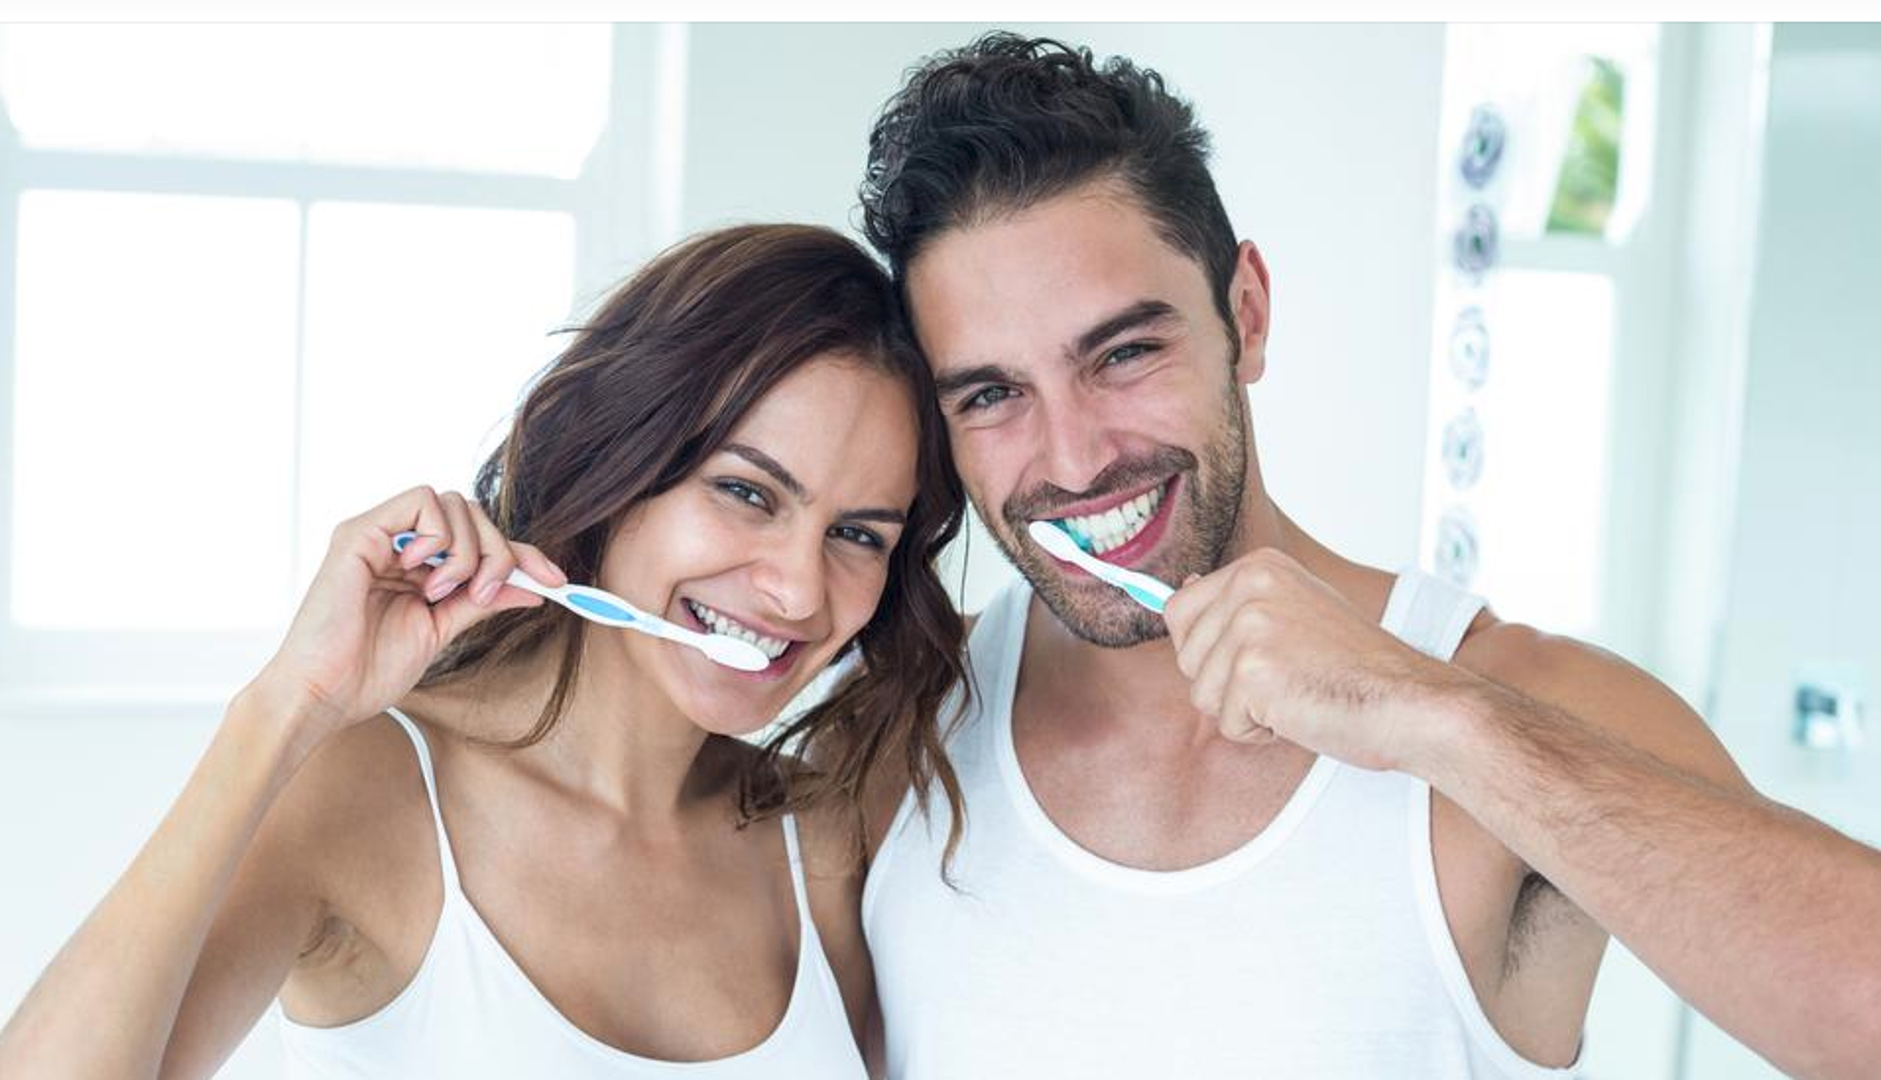 Održavajte zube čistima – Higijena zubi ne utječe samo na njihov izgled nego i na bolesti srca. Bakterije iz zubi mogu dospjeti do vaše krvi, što može dovesti do srčanih udara. Stoga, ne zaboravite svakodnevno četkati zube, ako je moguće i više puta dnevno.